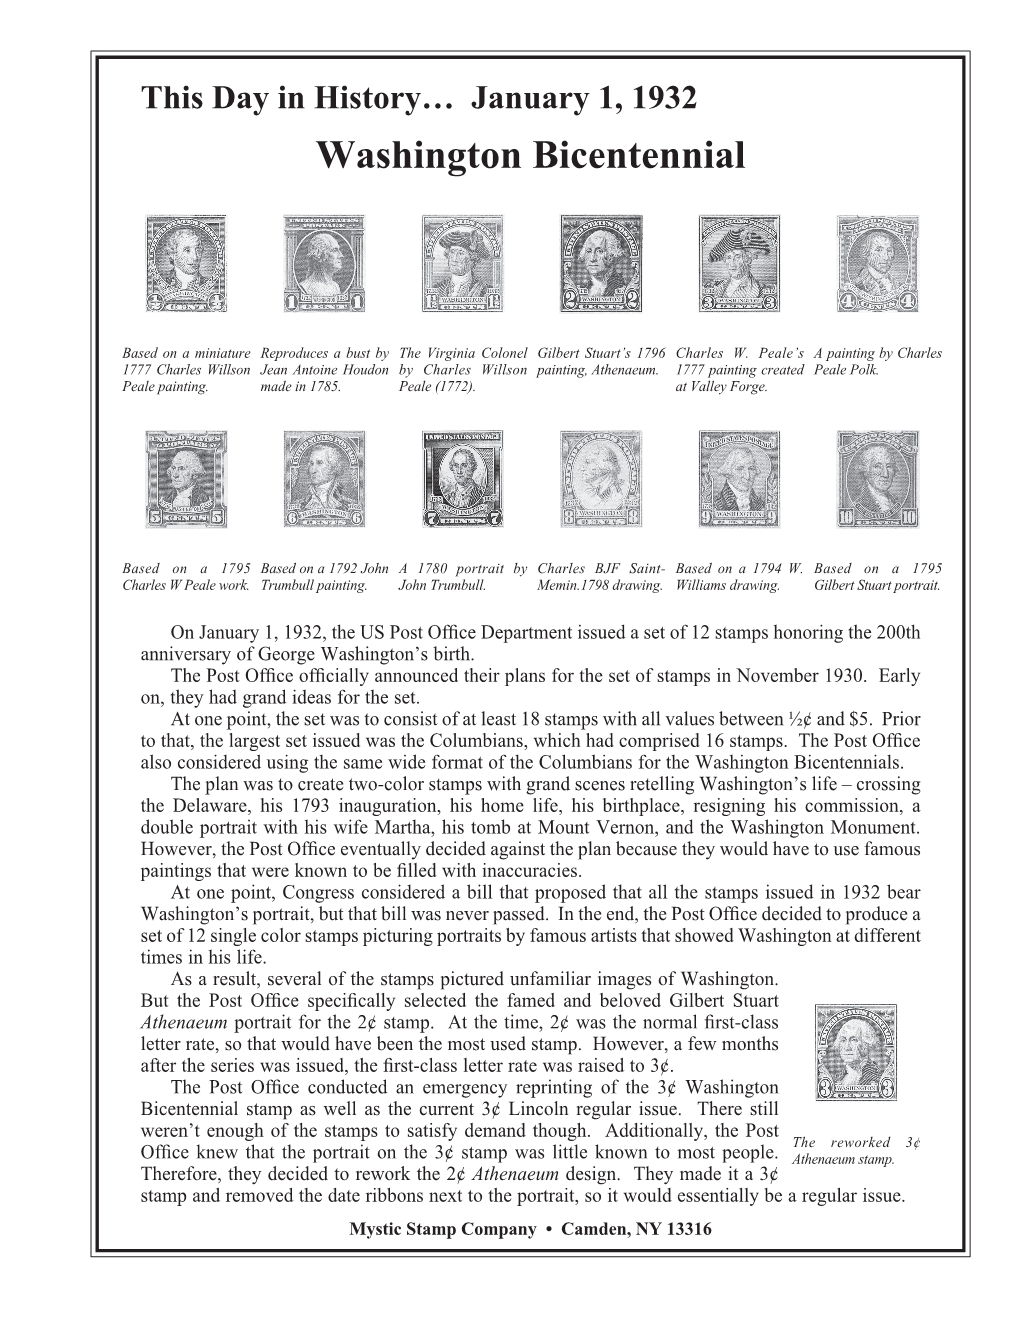 01-01-1932 Washington Bicentennial.Indd